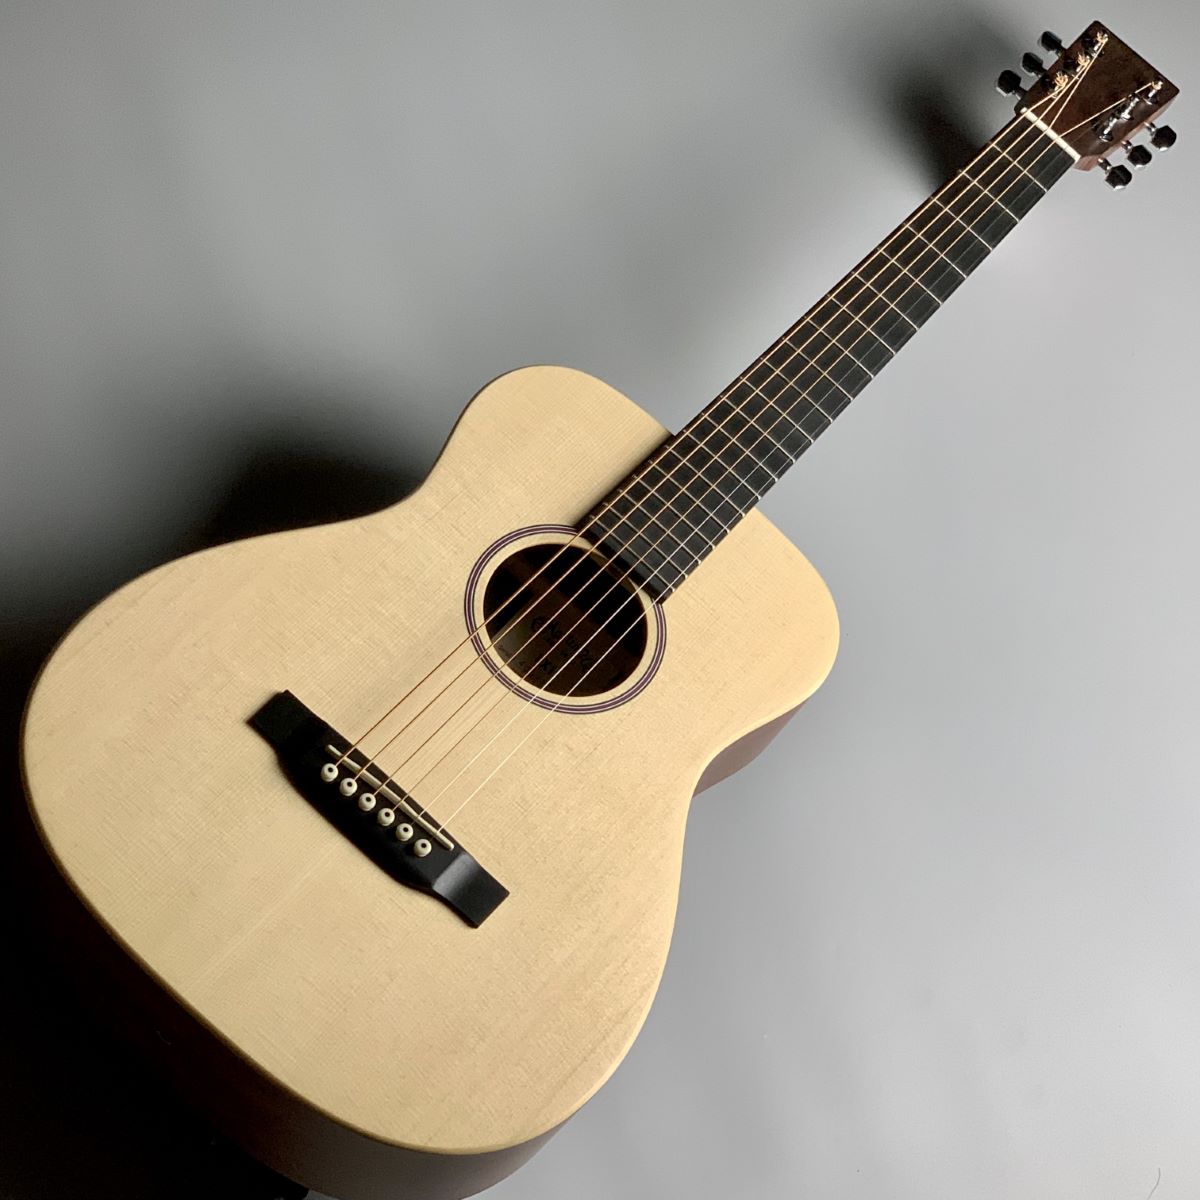 Martin LX1 ミニアコースティックギター【フォークギター】 【Little